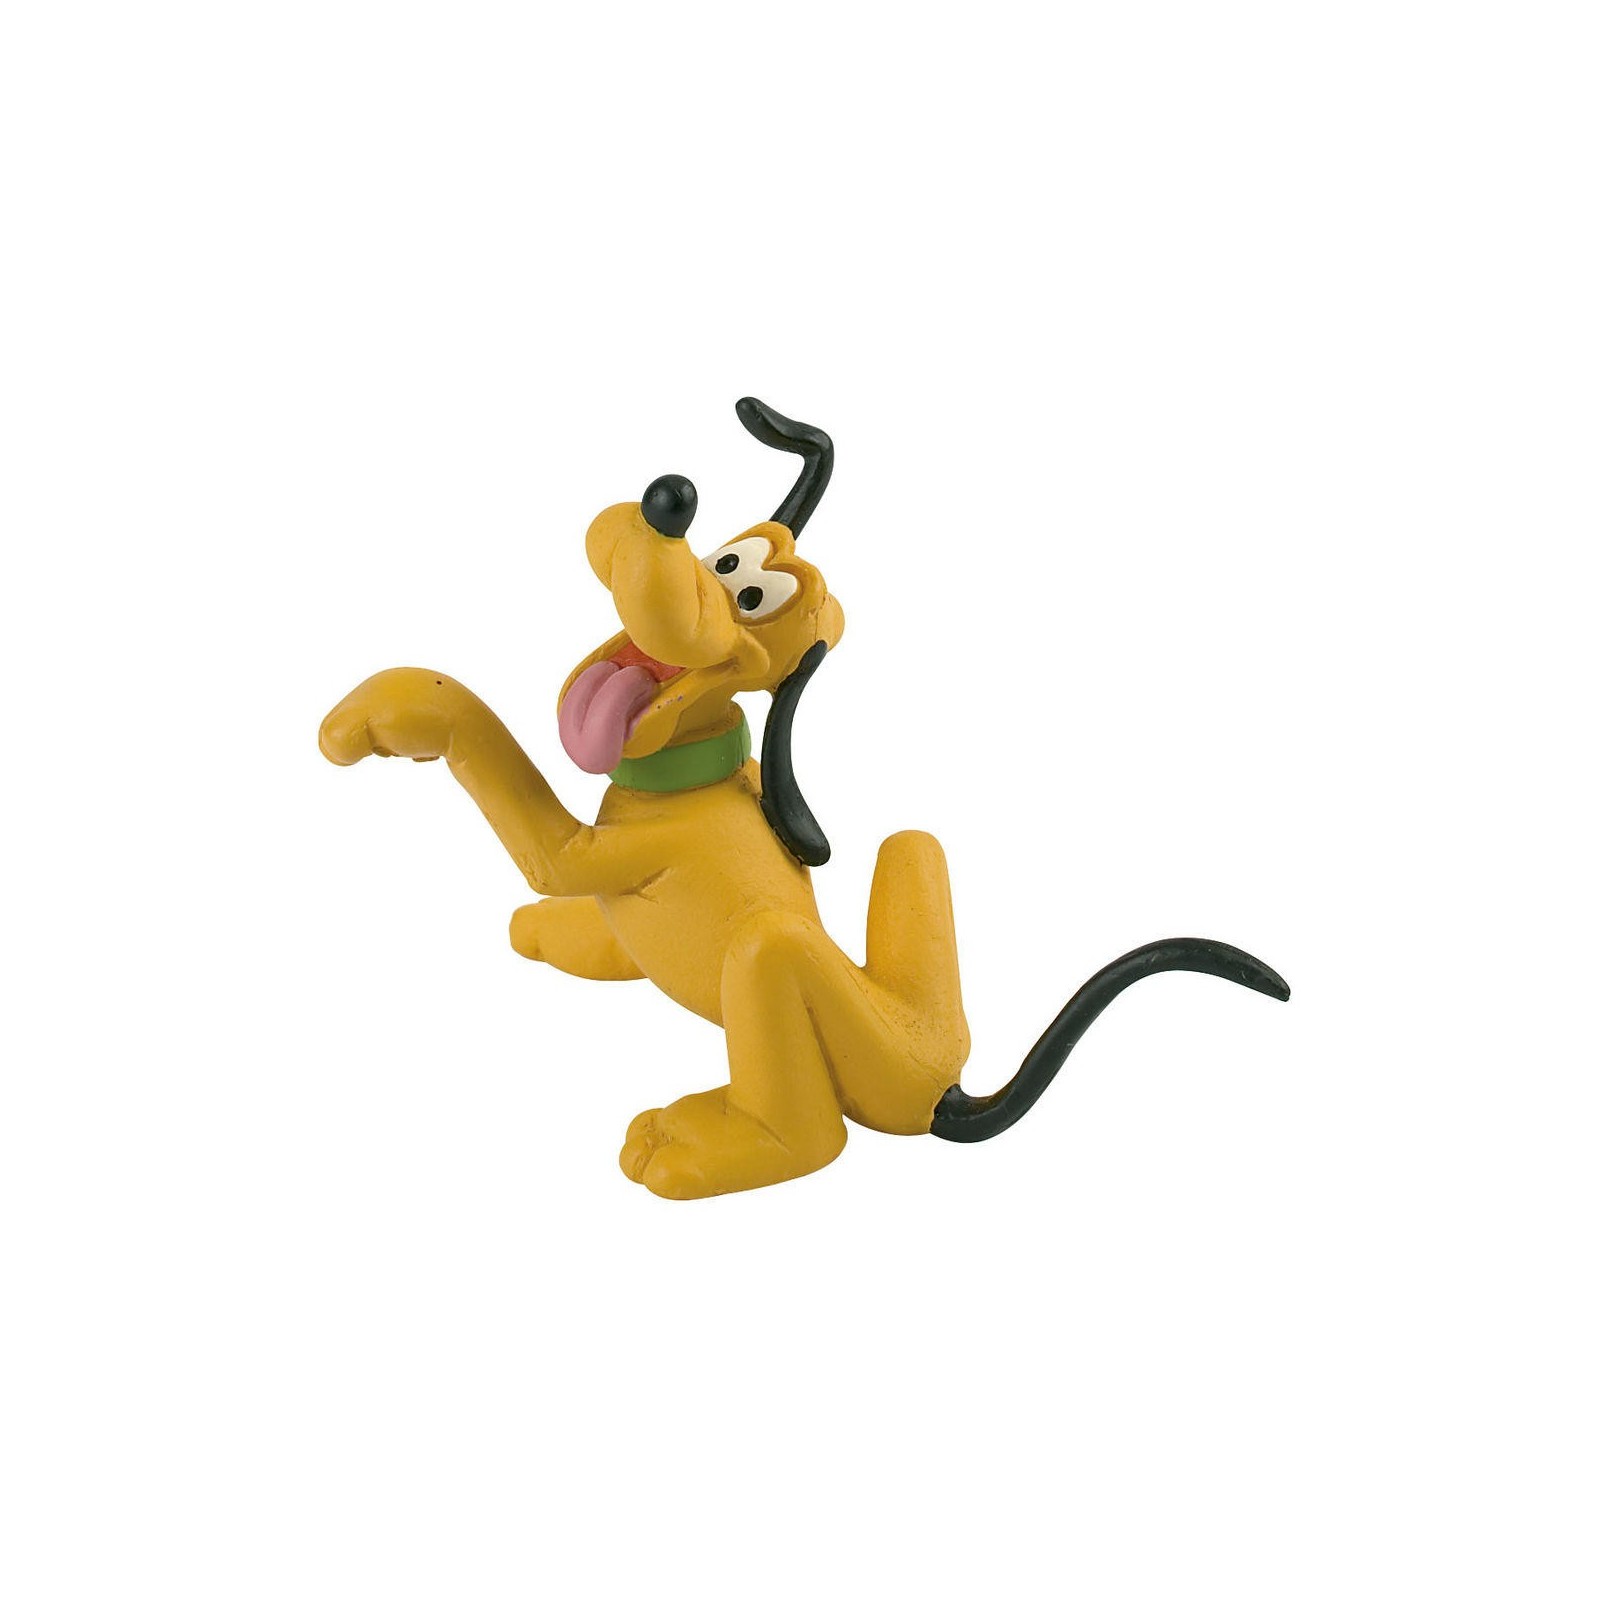 Figura Pluto Disney